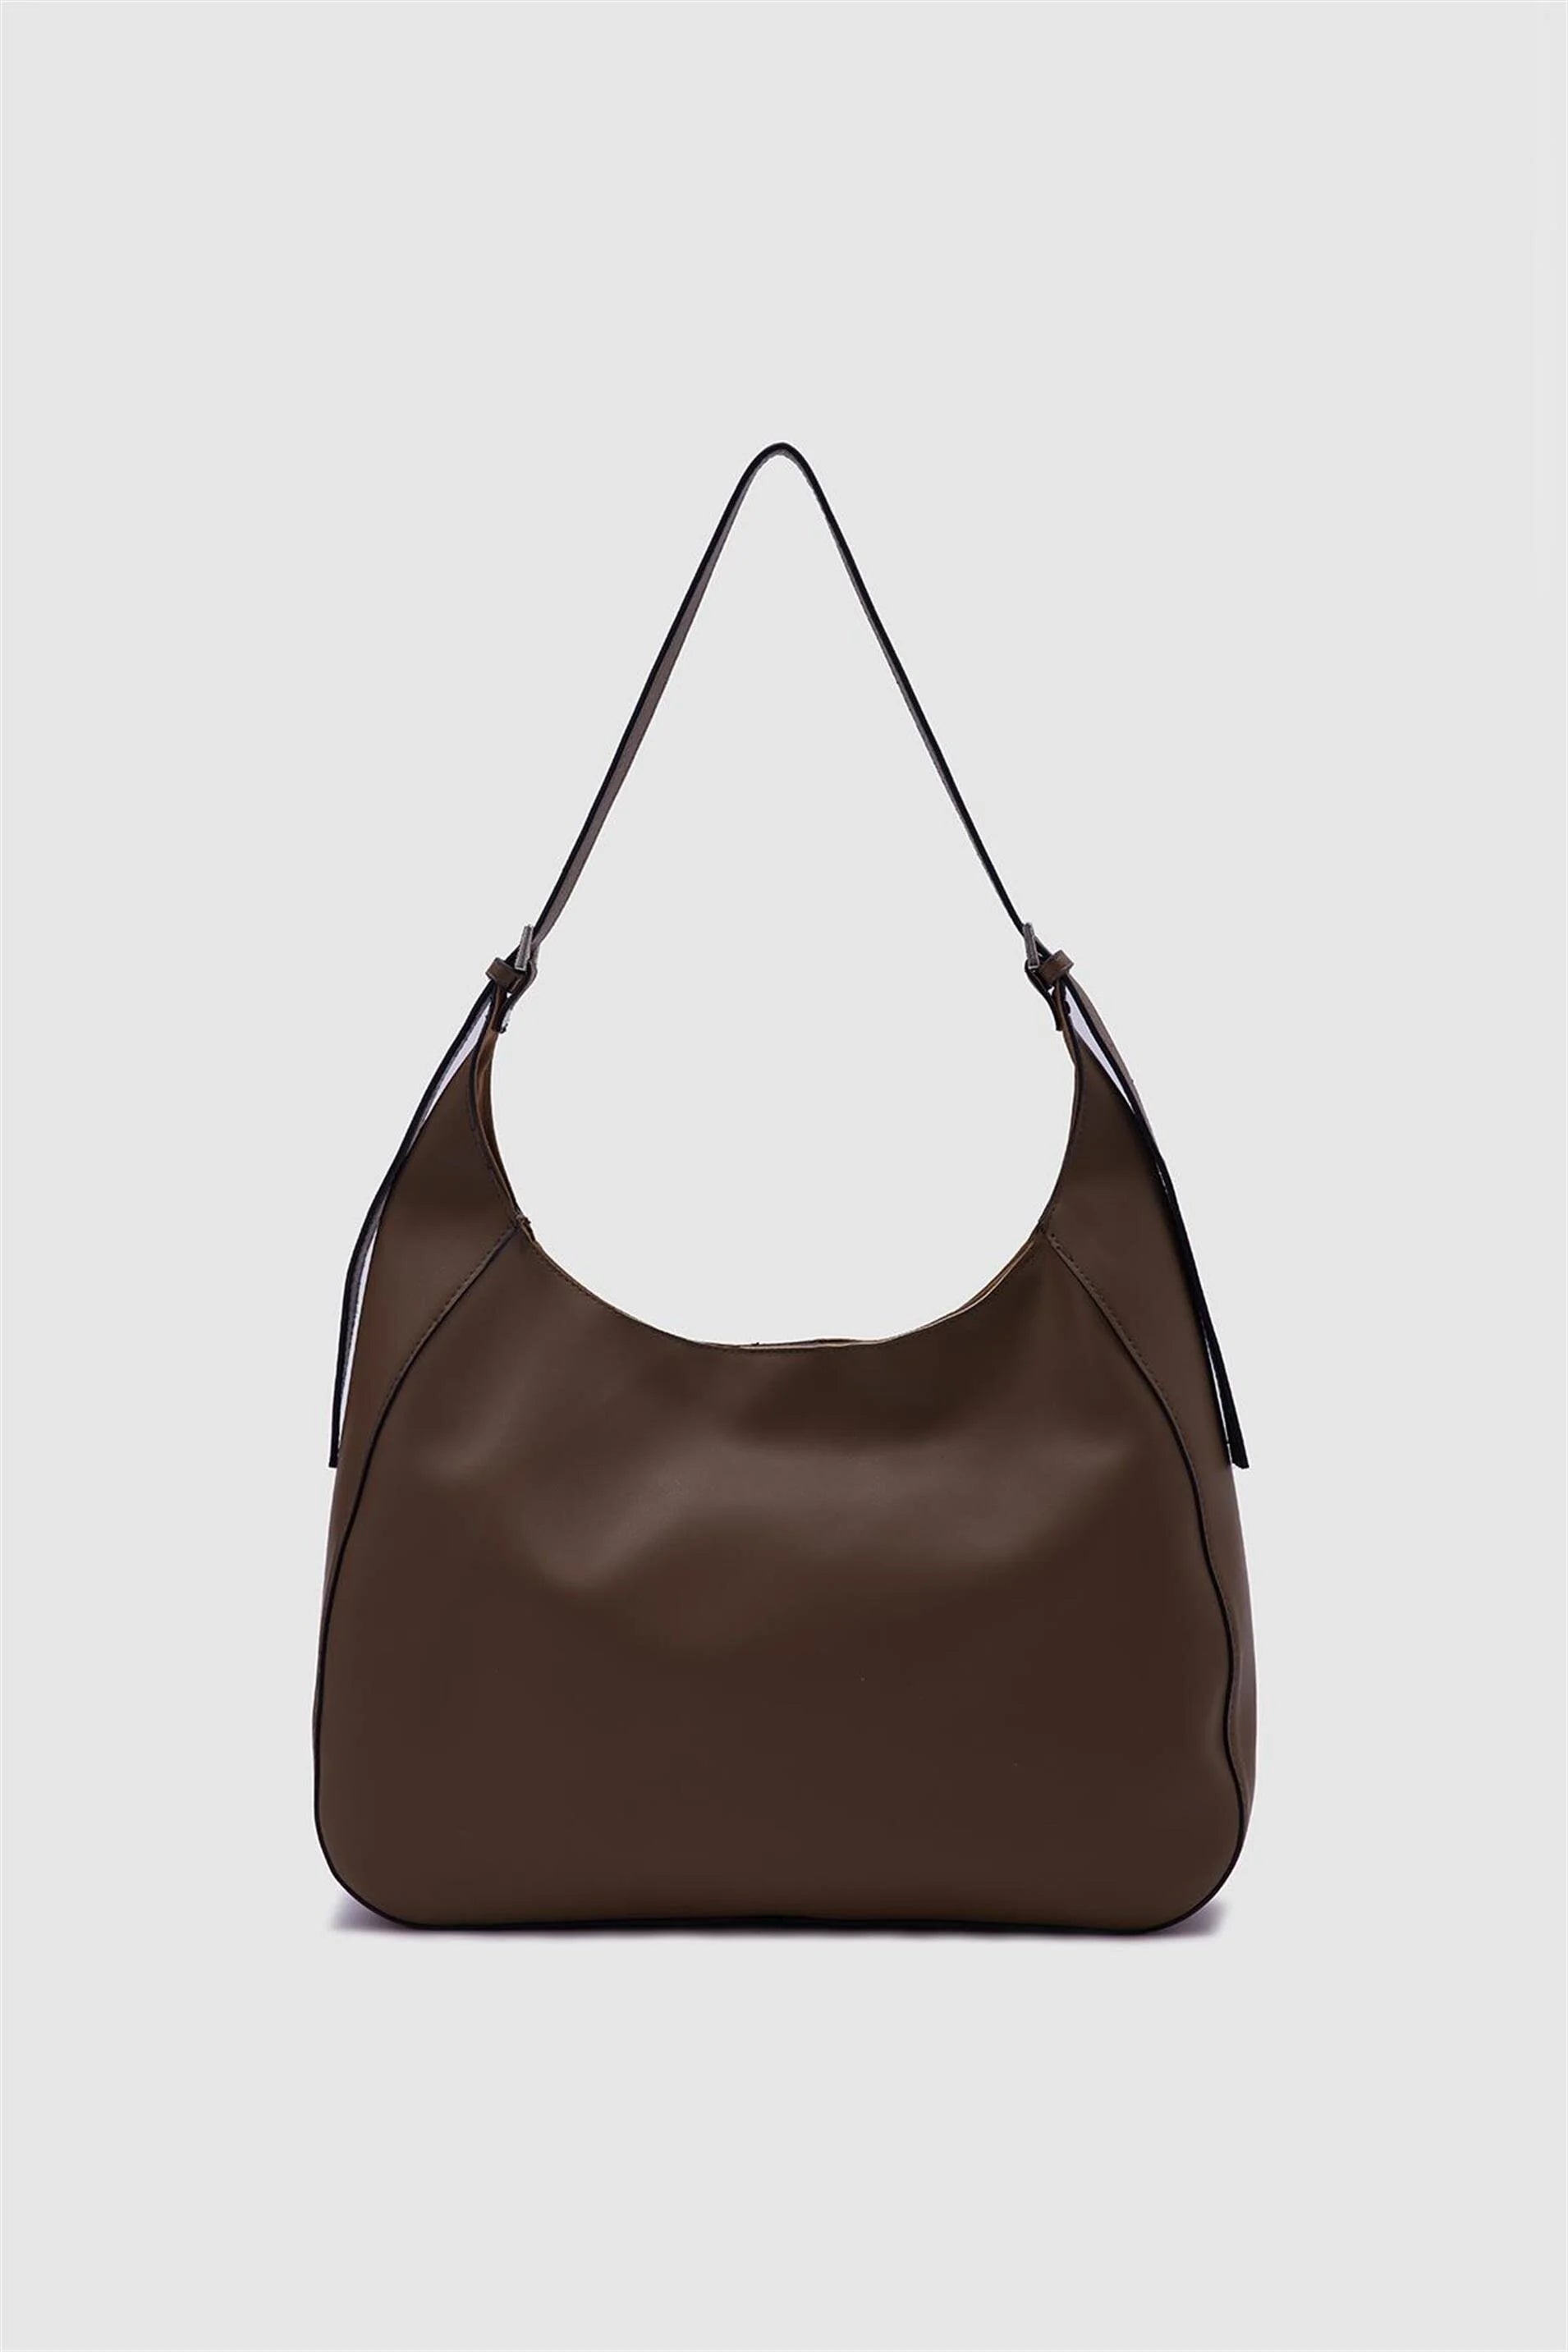 Faux Leather Mink Bigger Shoulder Bag shoulder bag LUNARITY GARAGE Mink  